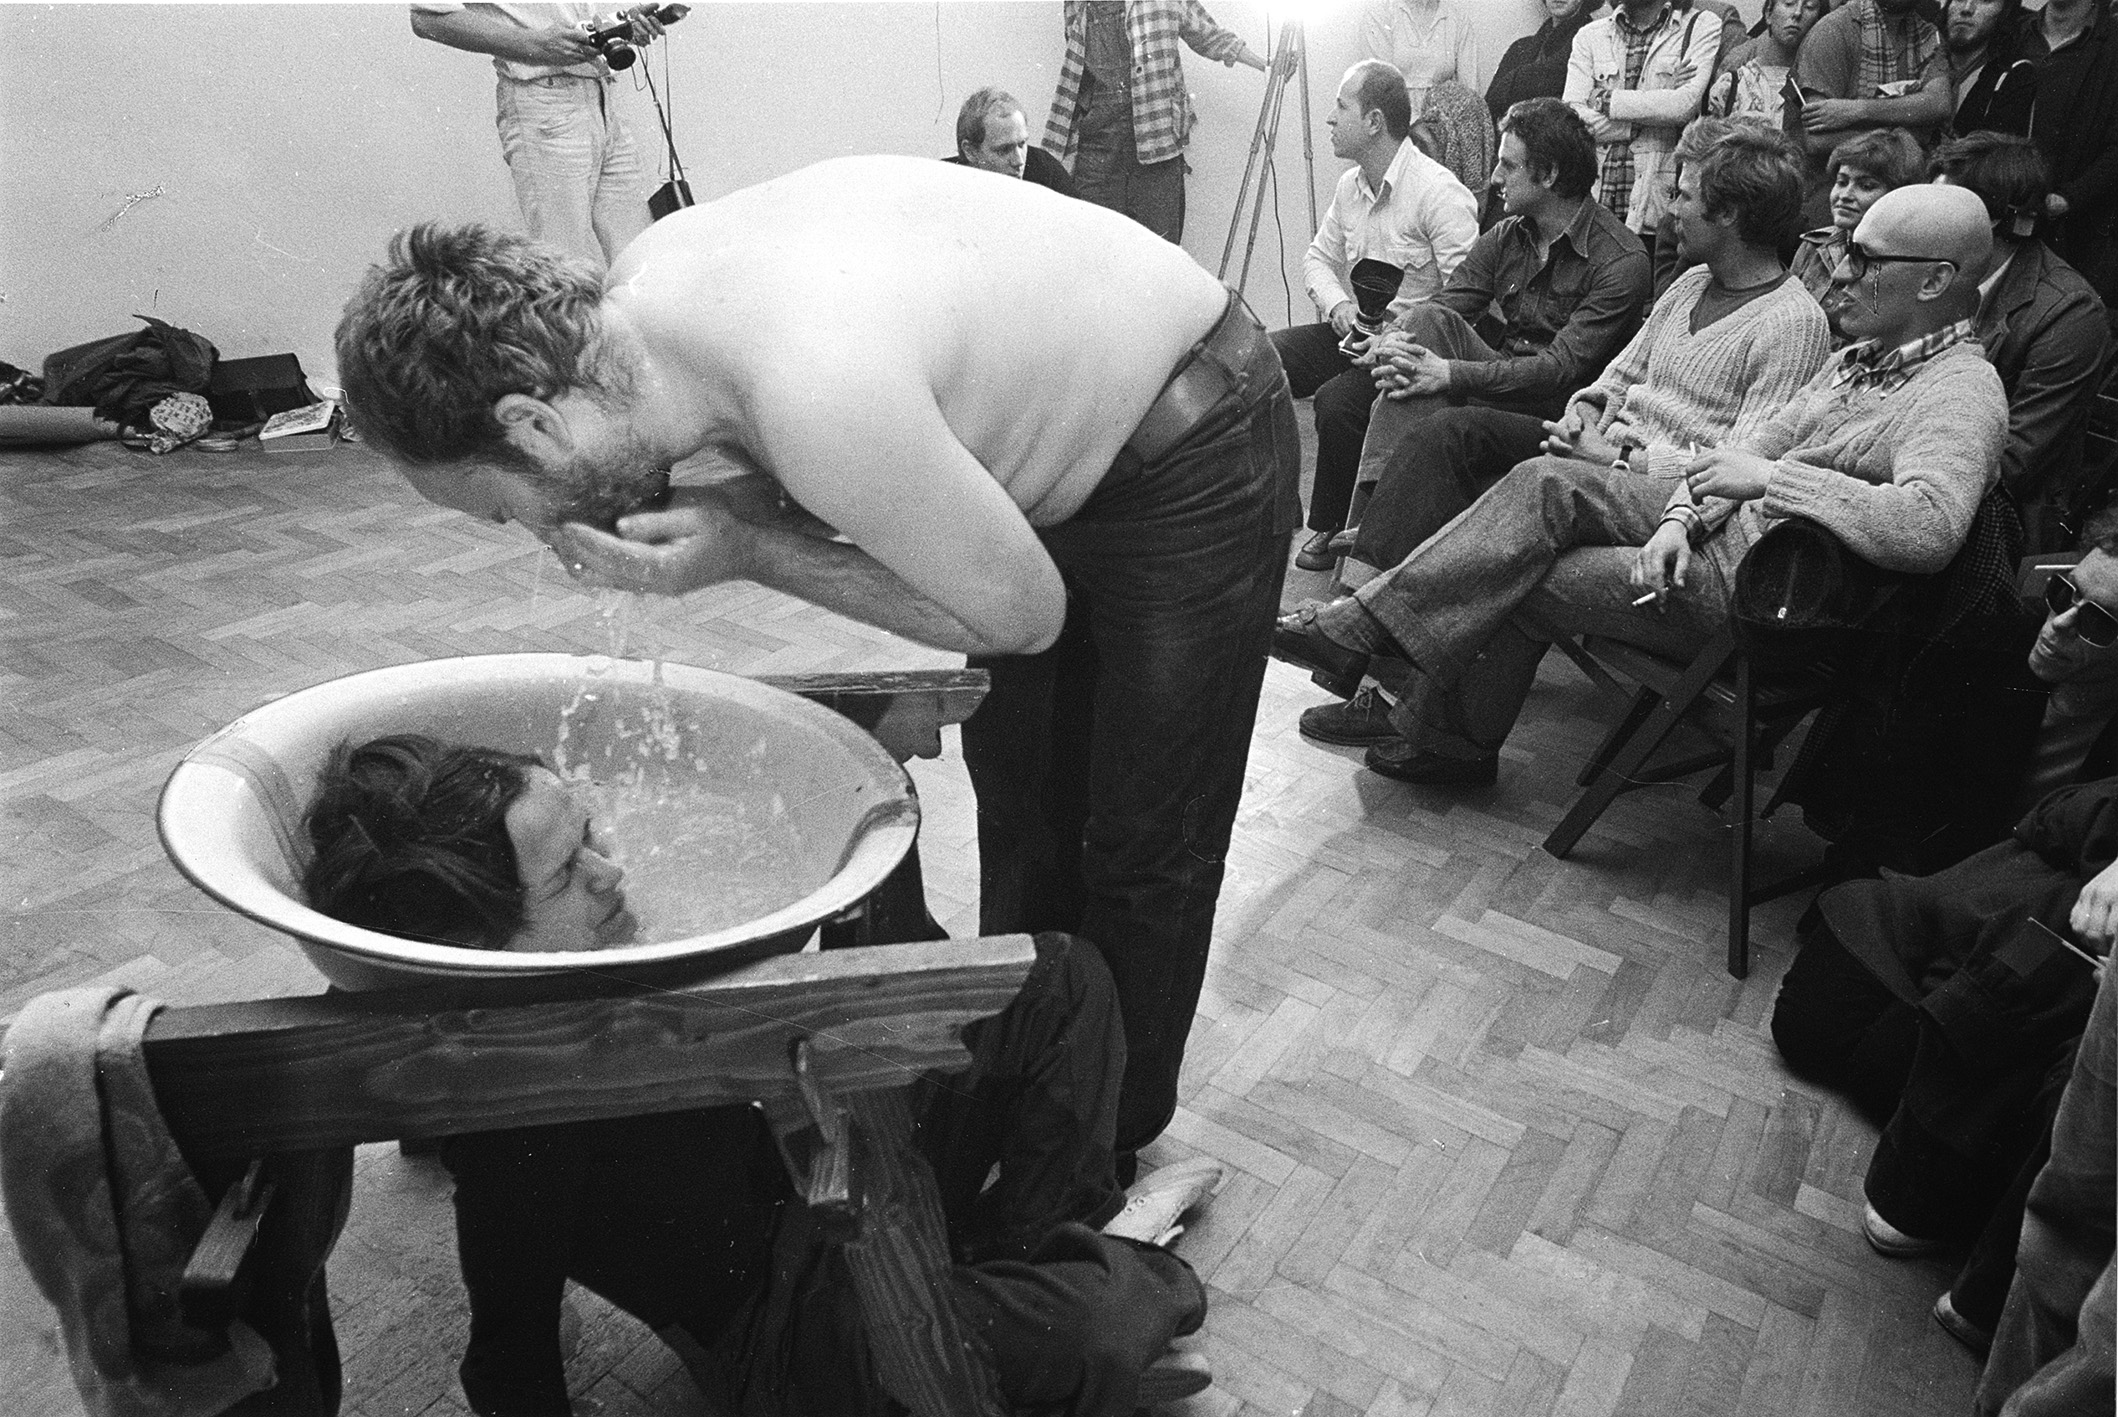 KwieKulik „Activities on the Head”, performance in Labirynt galery, 1978, Lublin, Poland. Photo by Andrzej Polakowski.